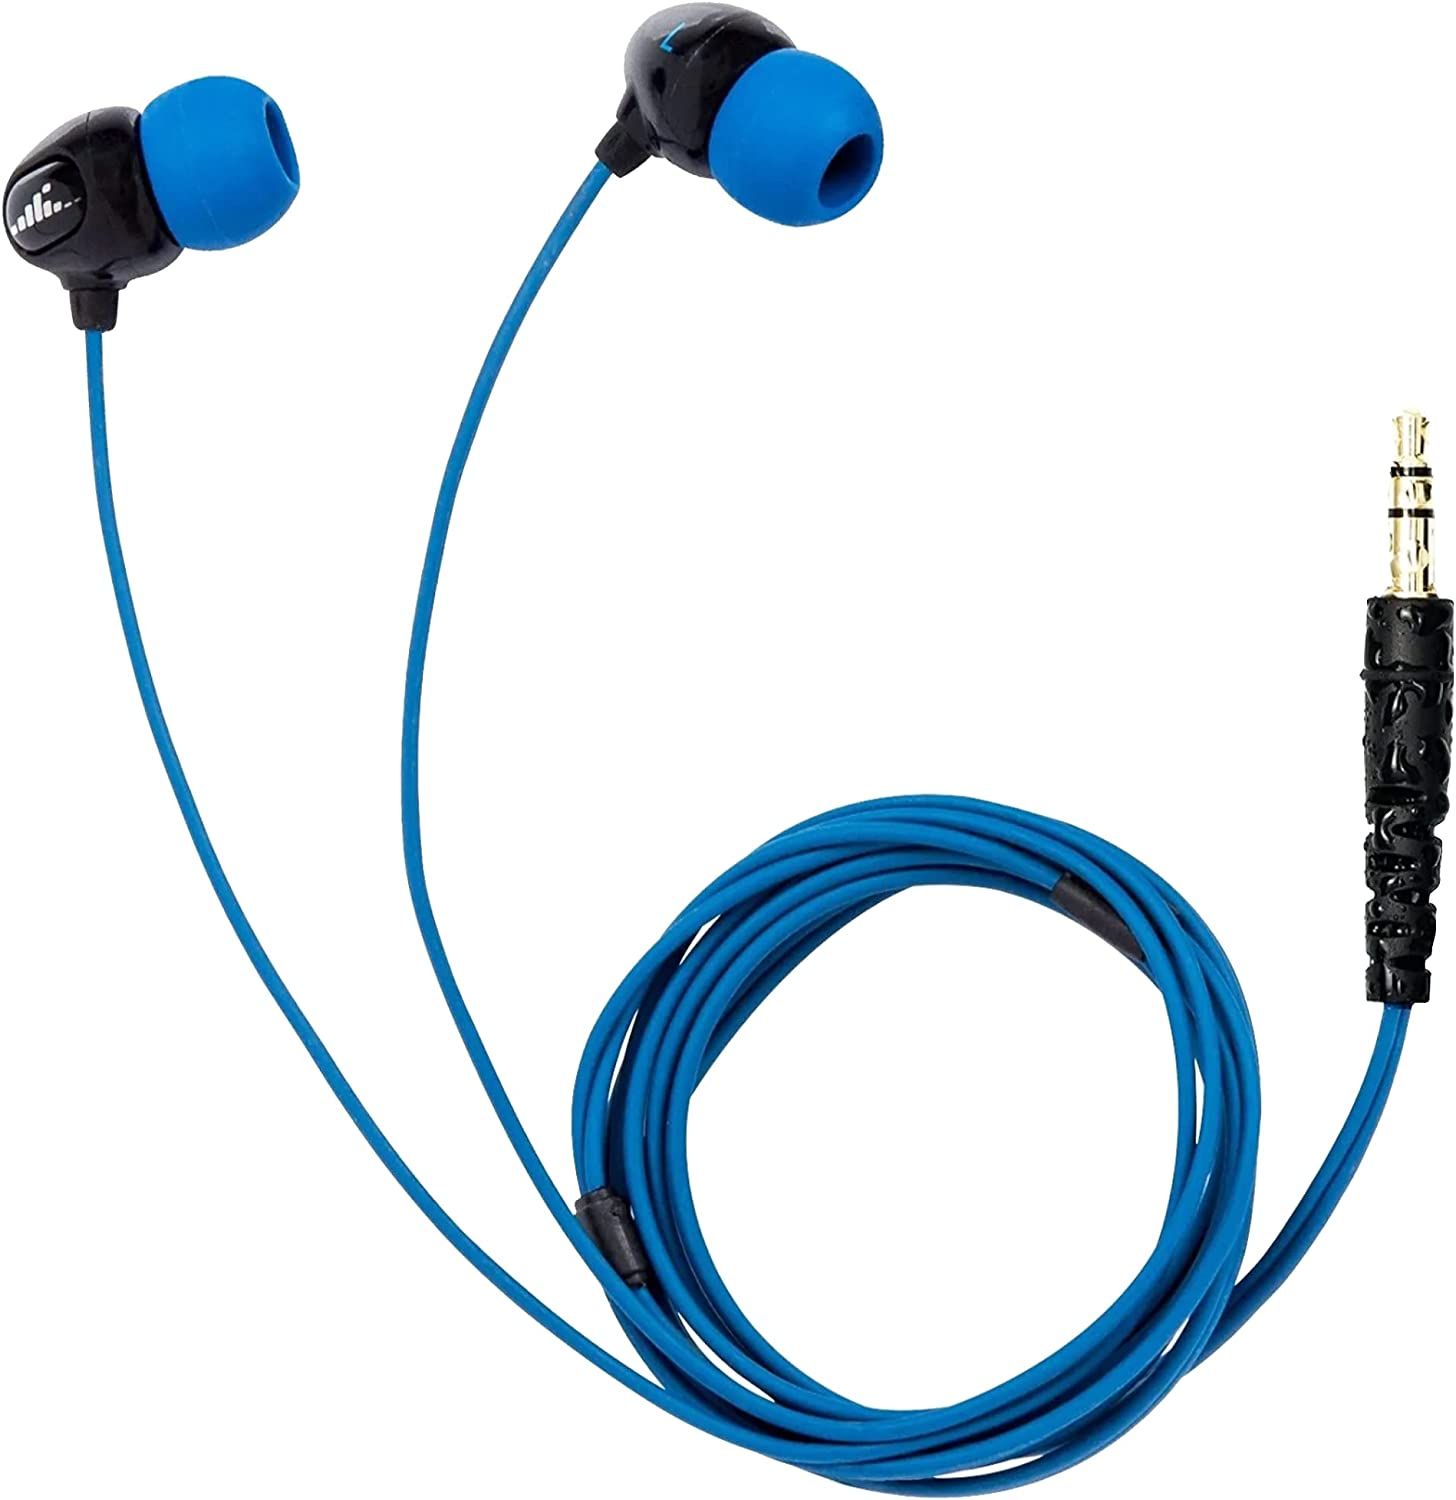 H20 Surge waterproof headphones 1